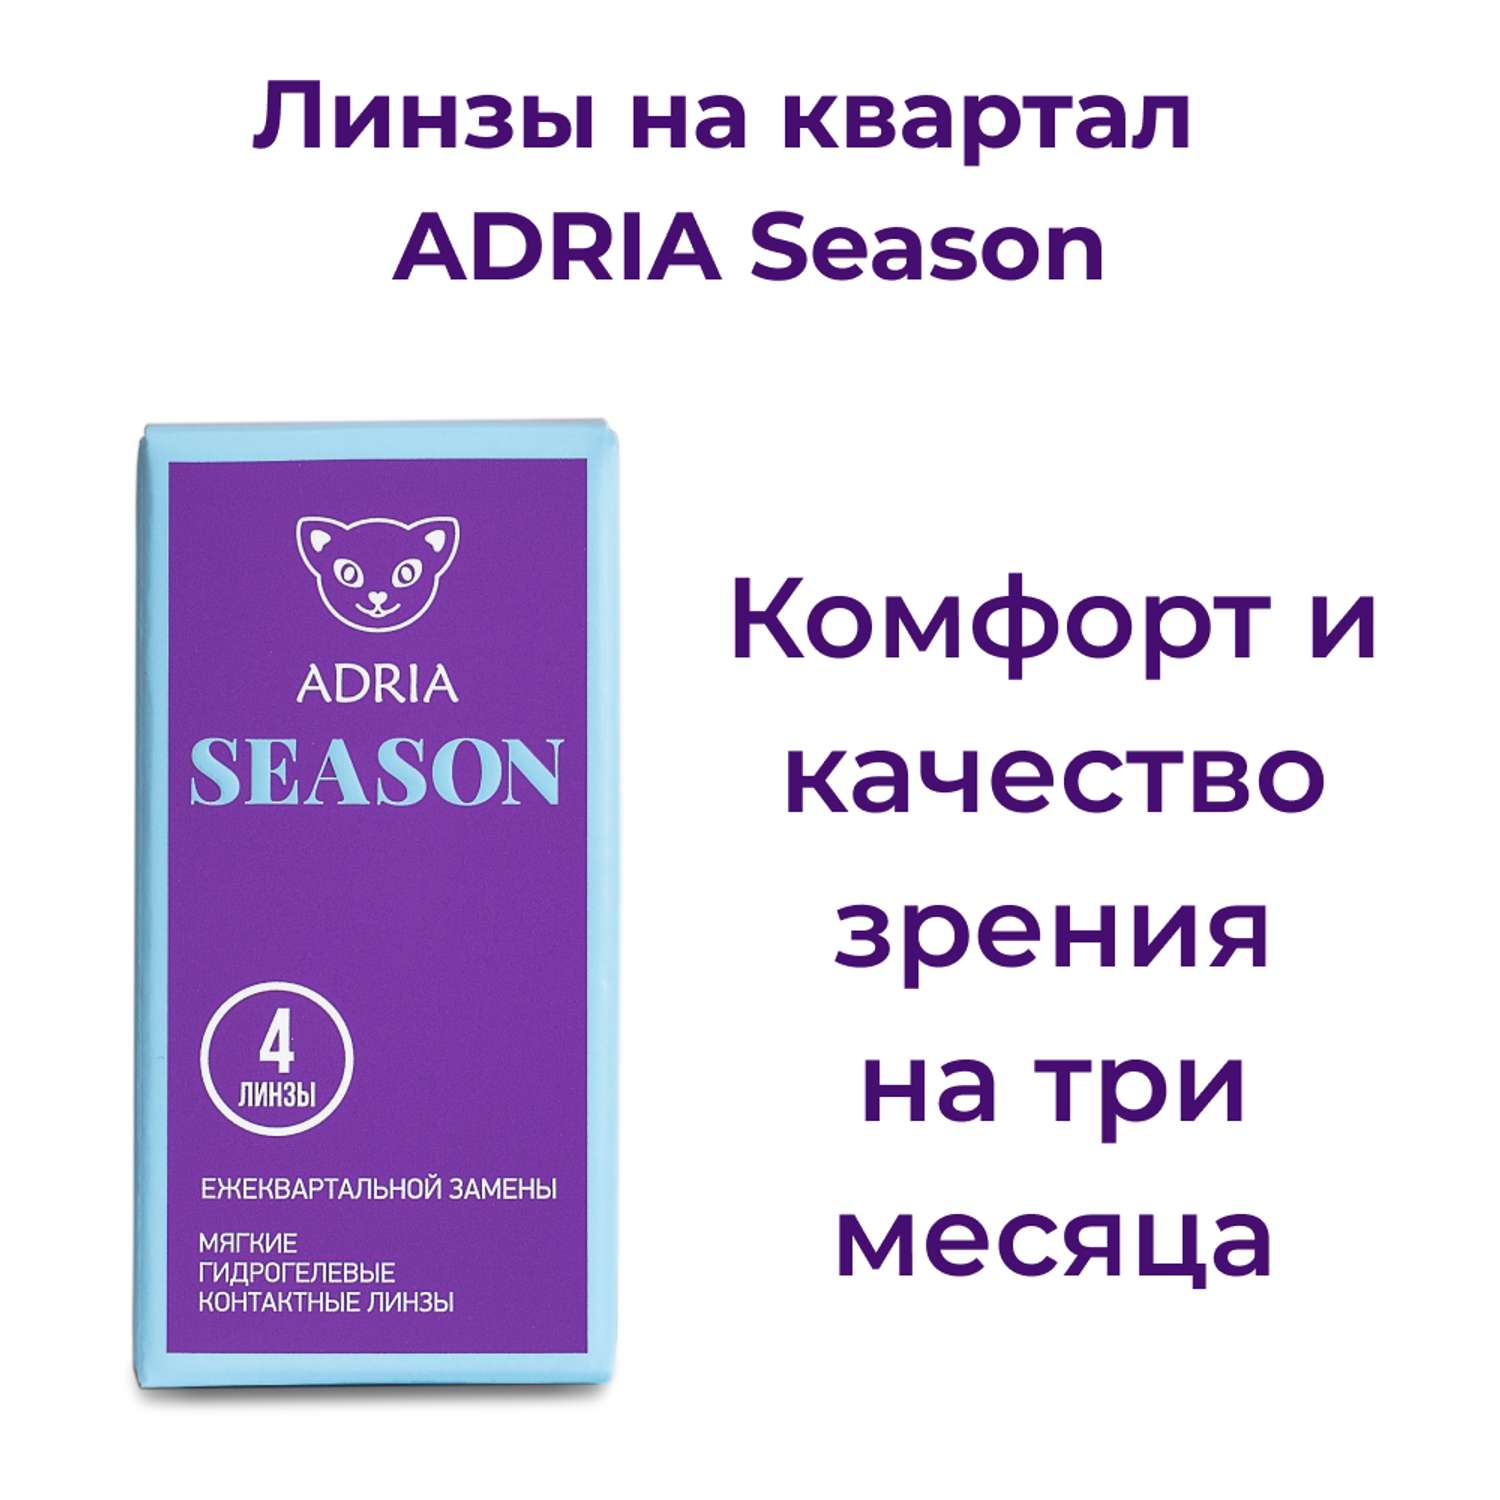 Контактные линзы ADRIA Season 4 линзы R 8.6 -3.00 - фото 2